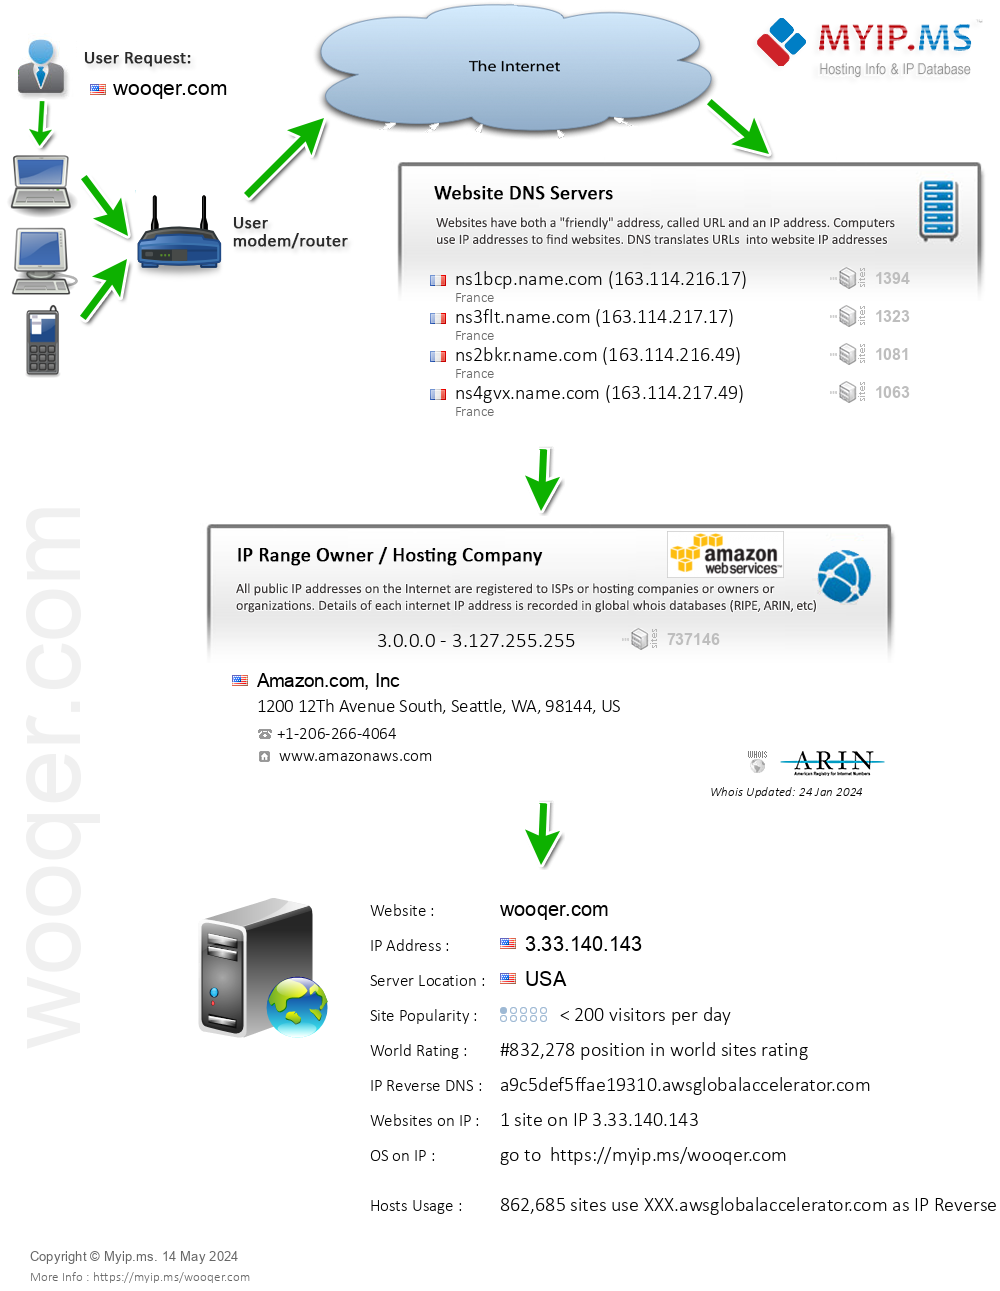 Wooqer.com - Website Hosting Visual IP Diagram